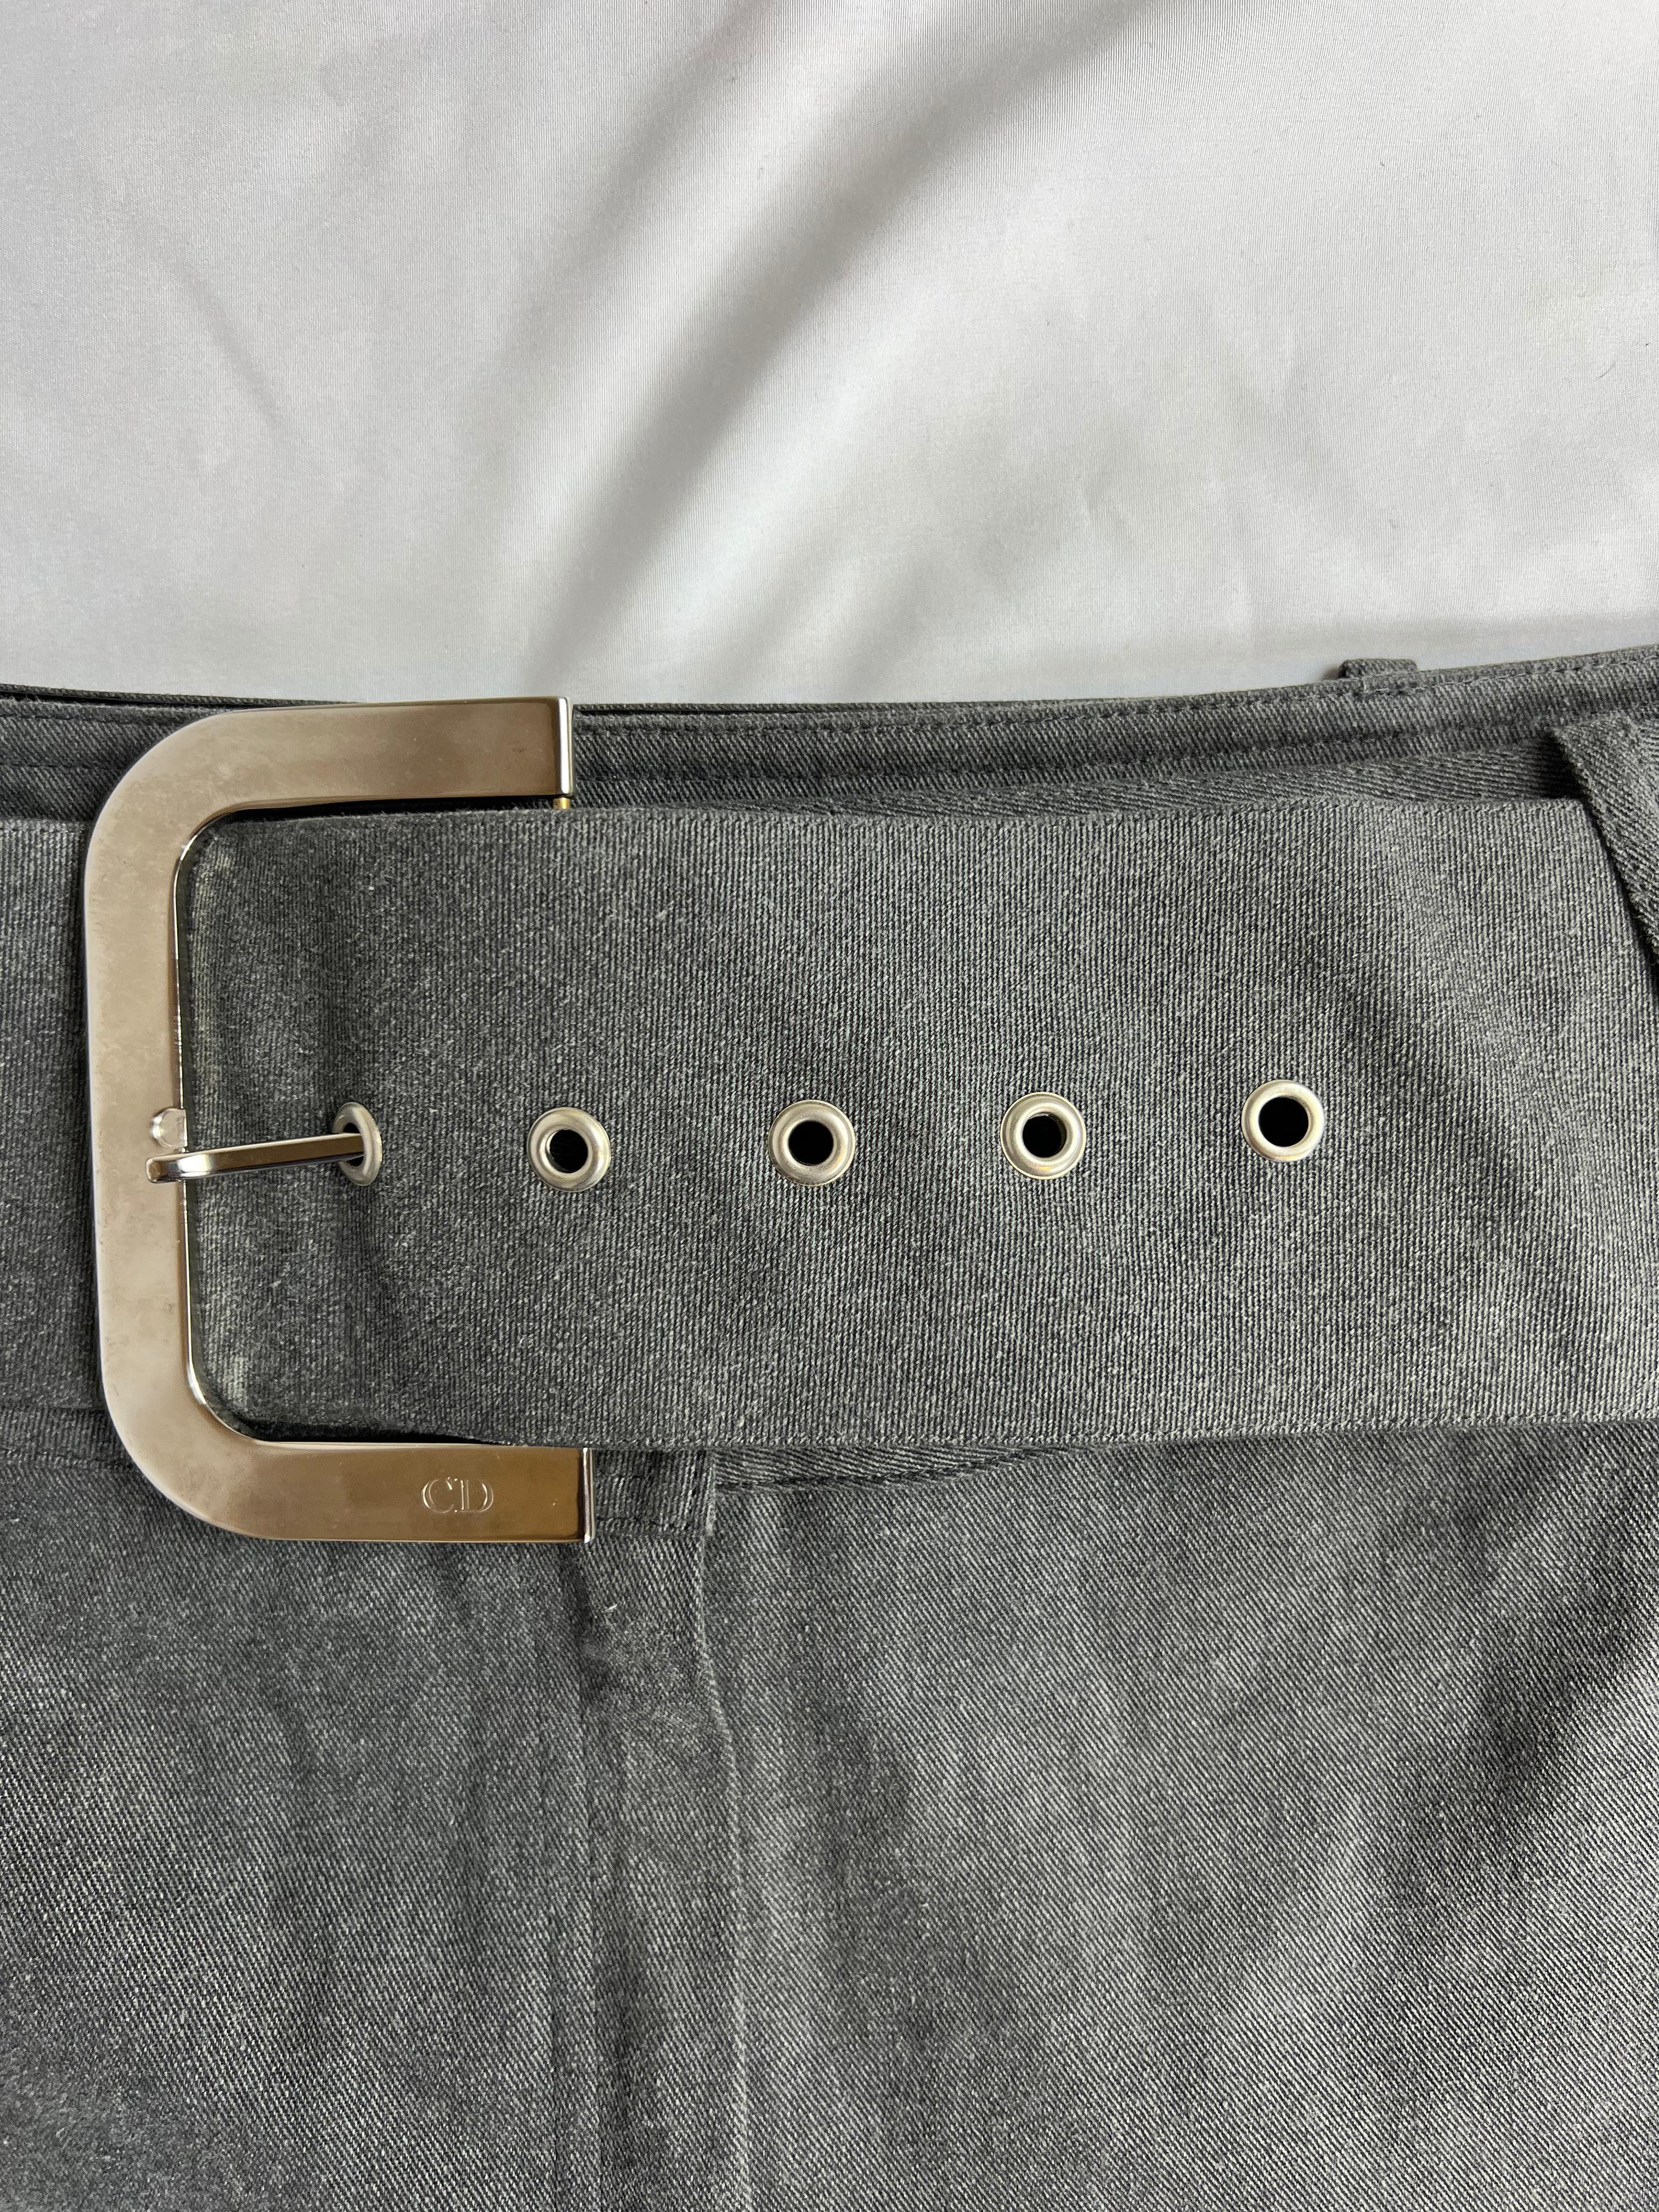 Pantalon en jean gris Christian Dior, taille 10

- Denim gris clair délavé
- 100% coton
- Hausse moyenne
- Coupe évasée
- Fentes latérales
- Large ceinture
- Matériel de couleur argentée
- Boutons et fermeture éclair à l'avant
- Fabriqué en France